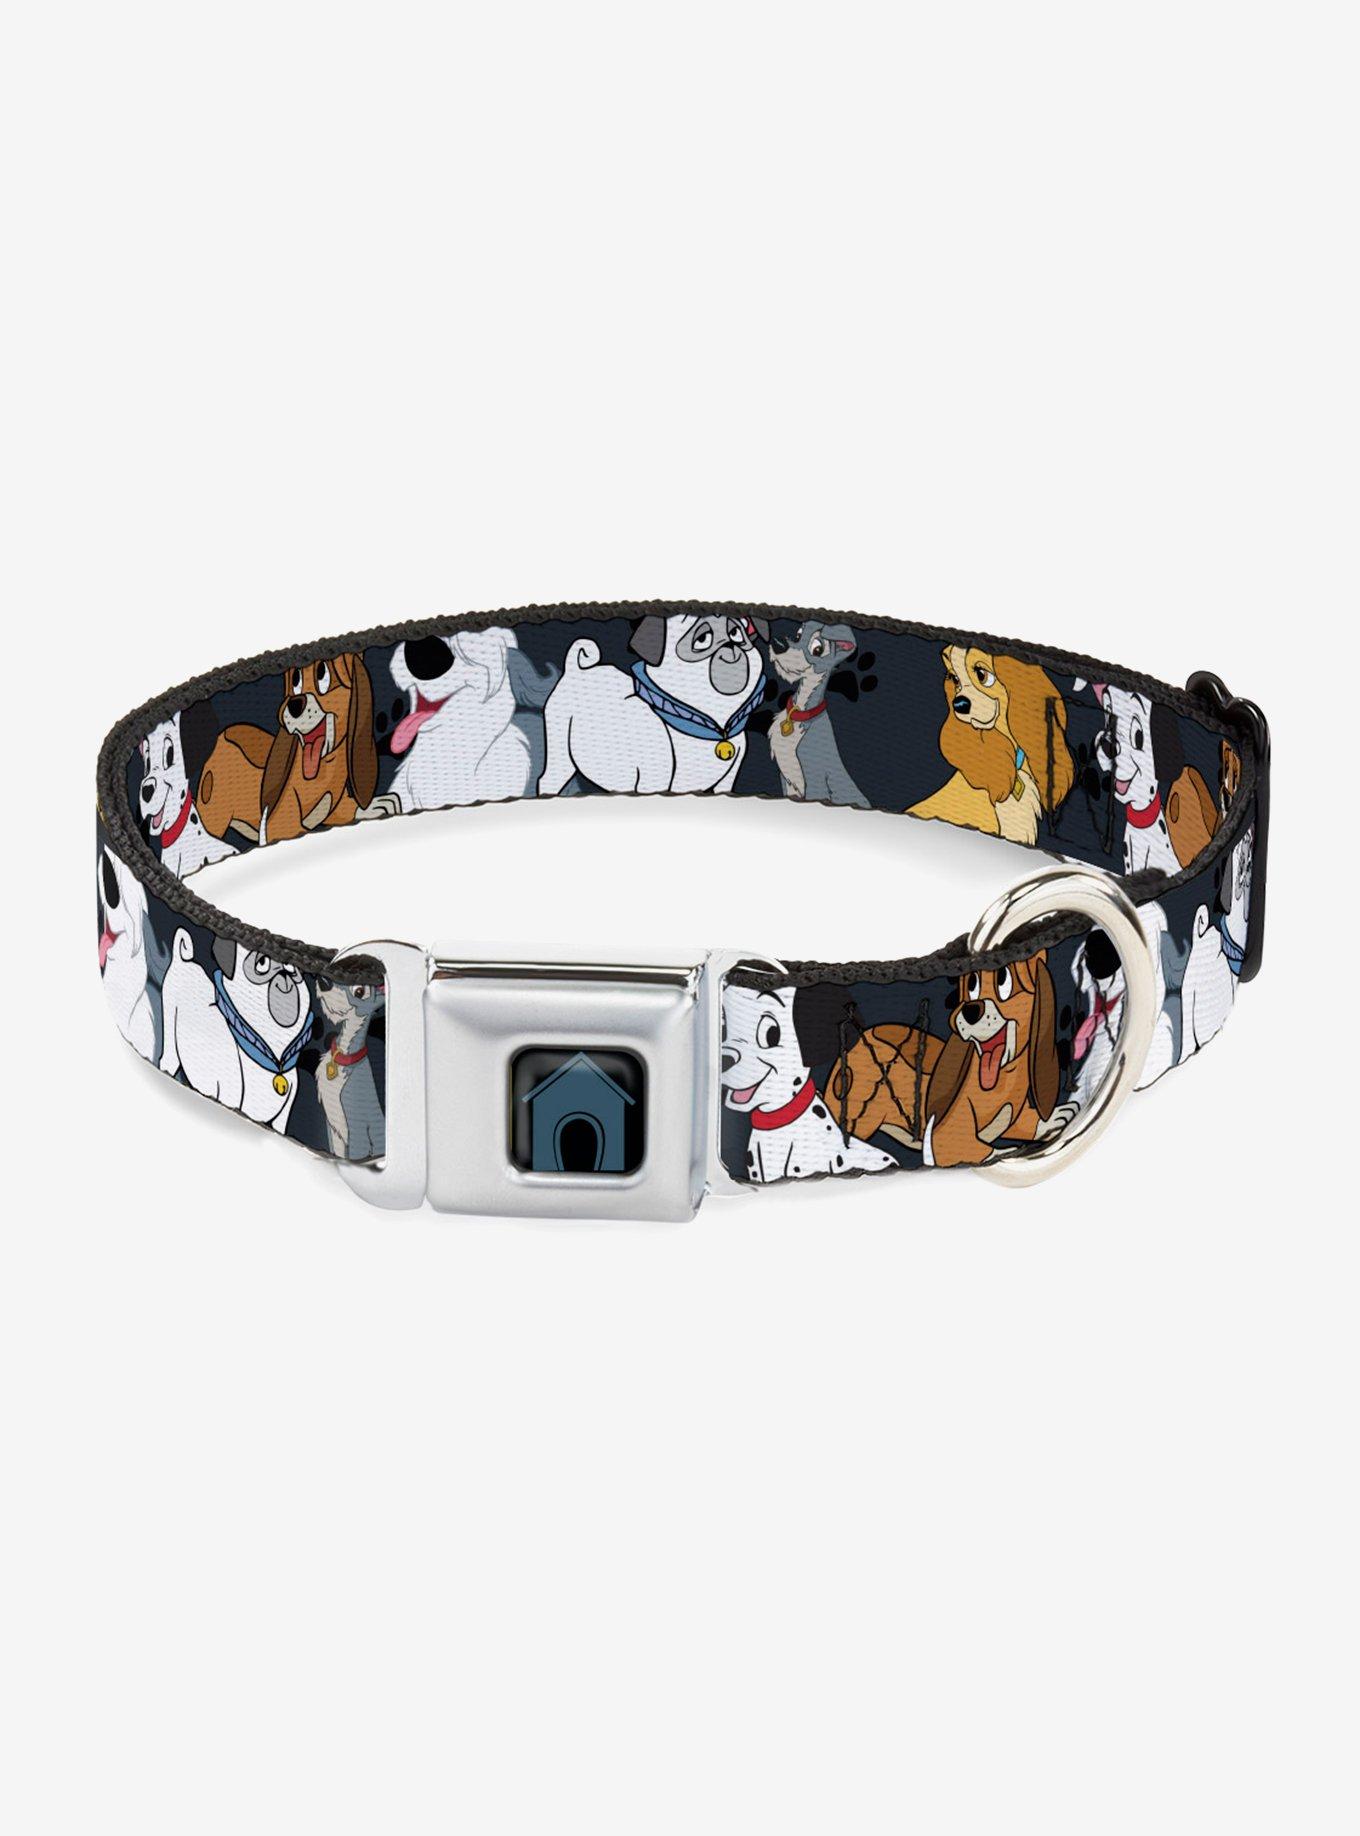 Mermaid Ombre Dog Collar Cute Dog Collar Girl Dog Collar 